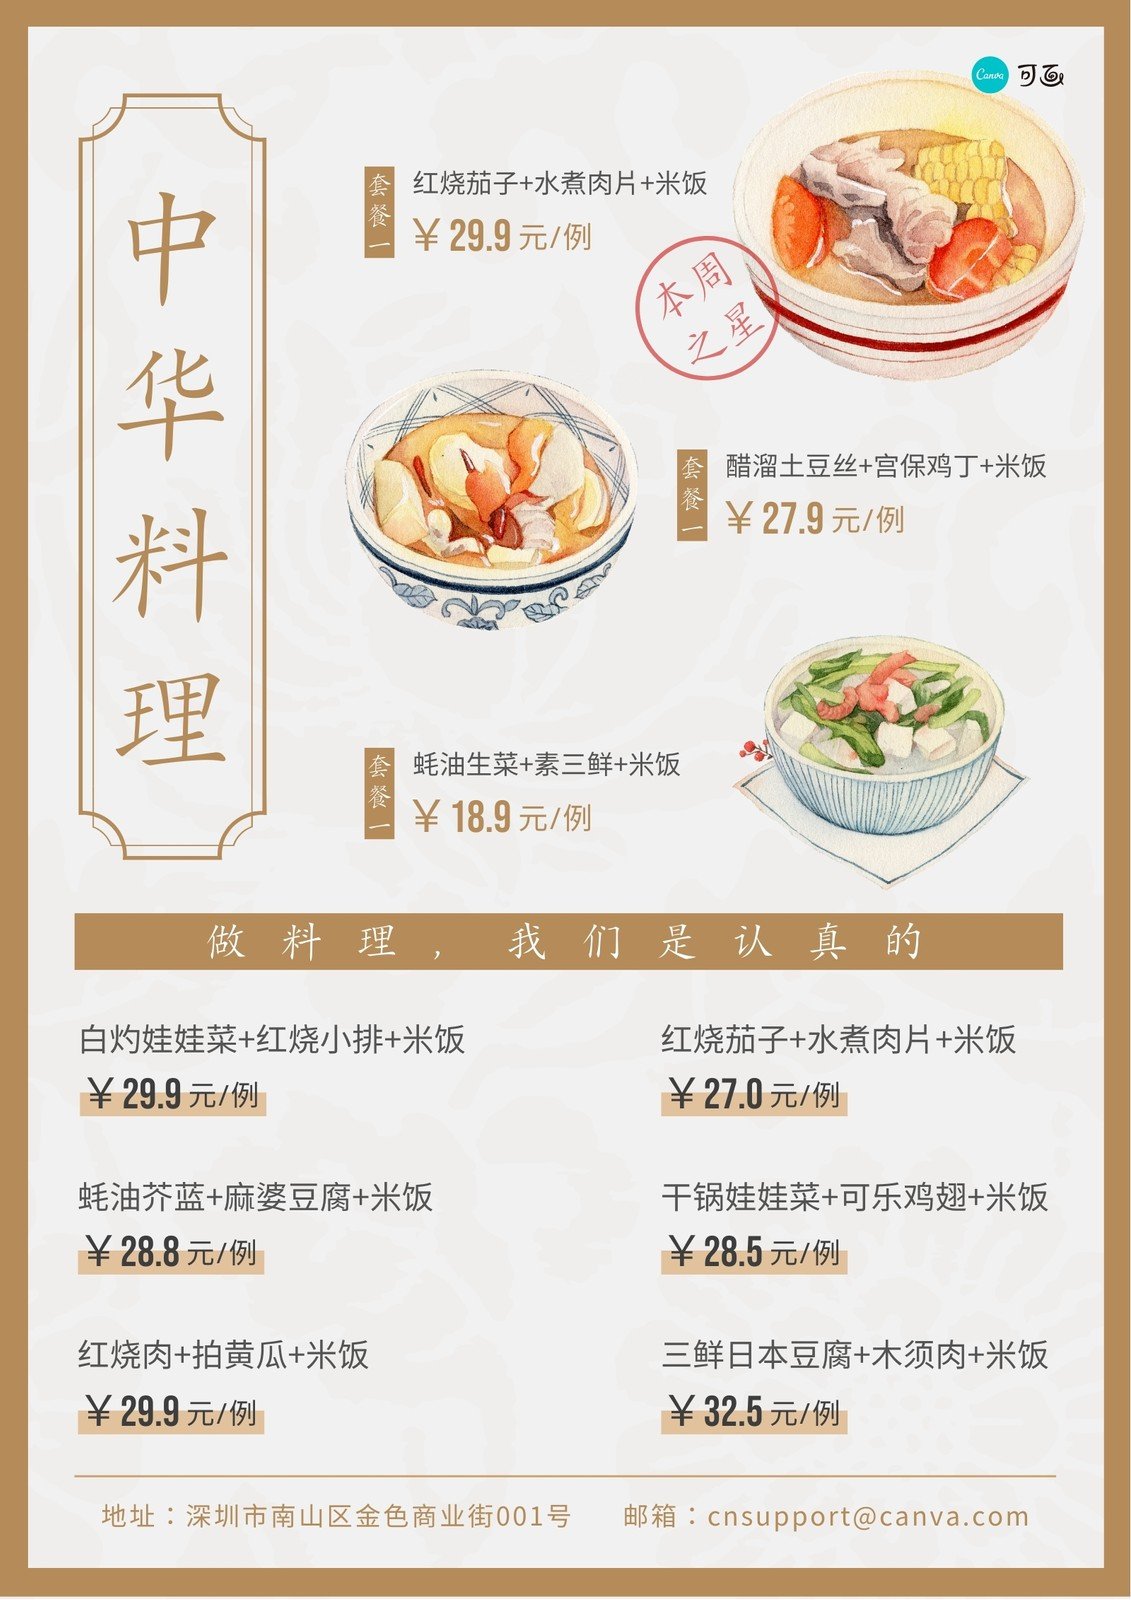 中華料理 中華料理の 四川料理 広東料理 上海料理 北京料理 って何が違うの